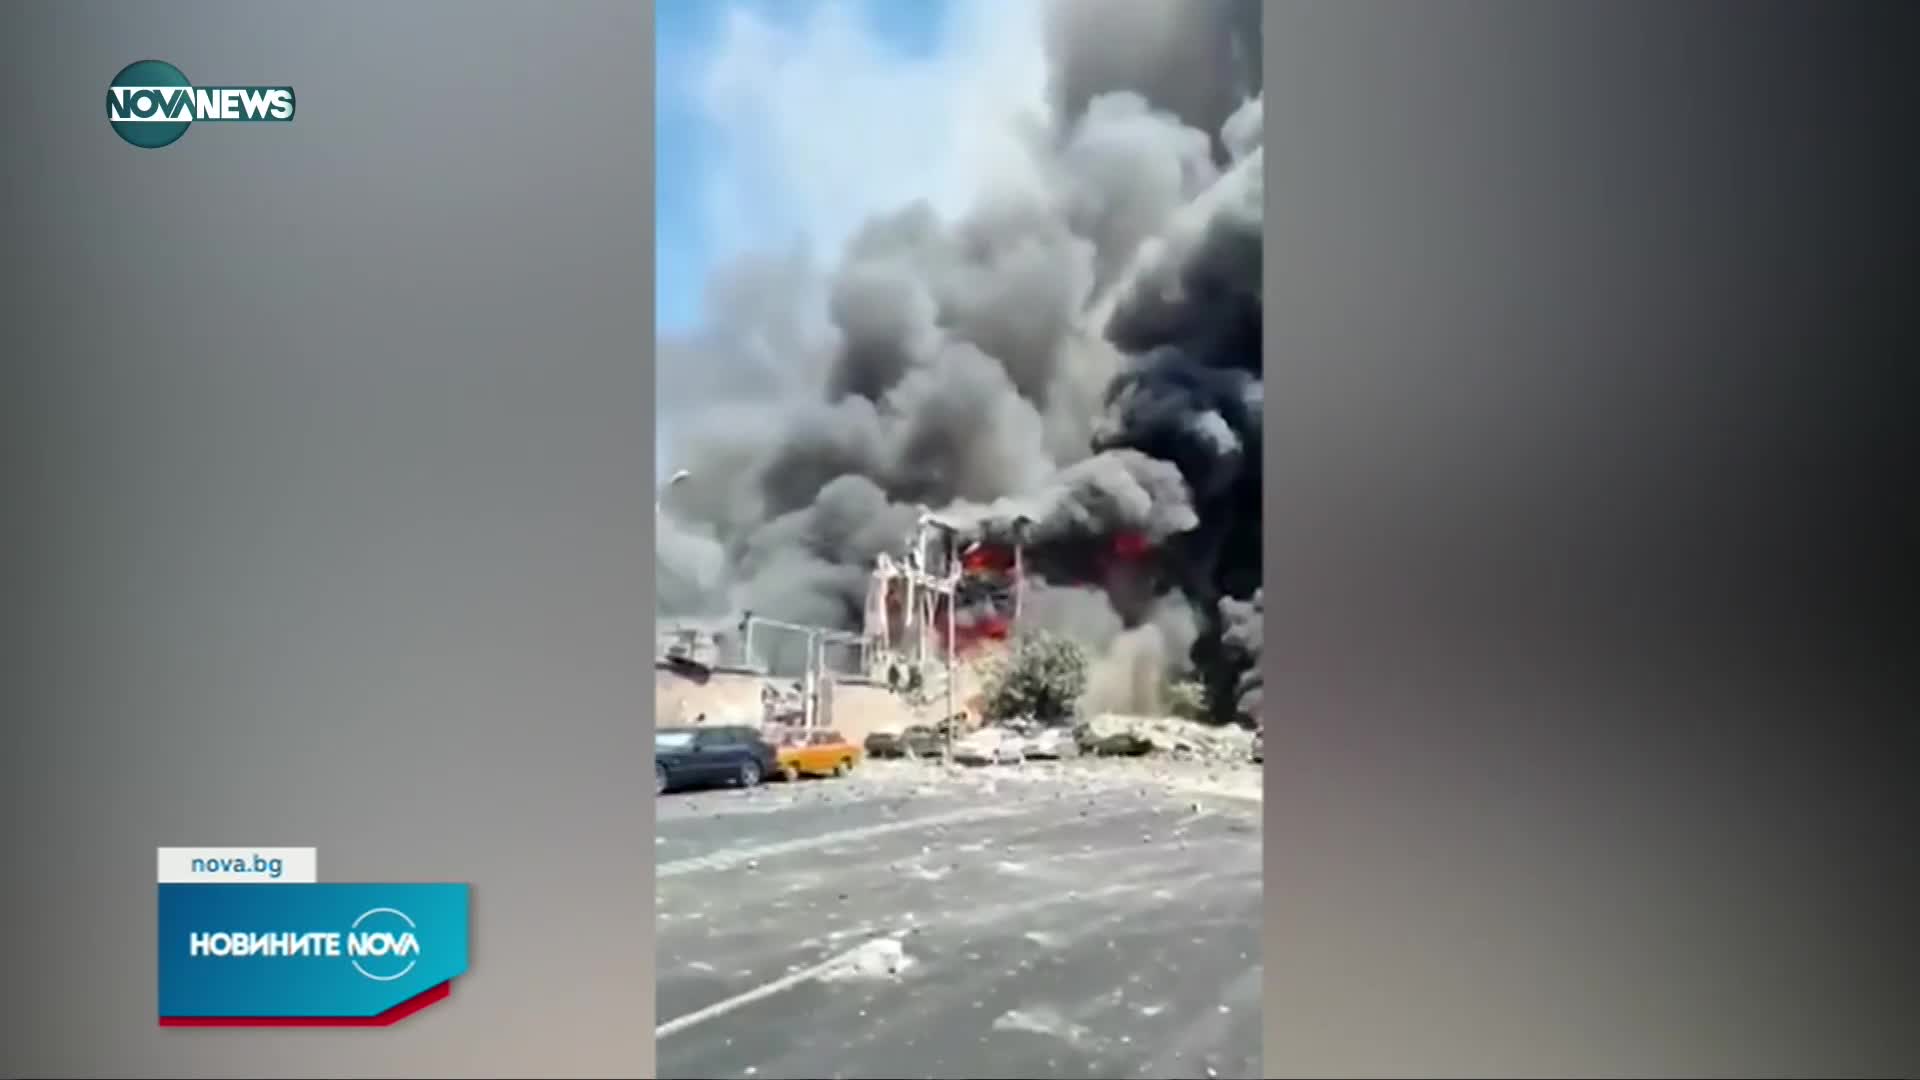 Взрив в търговски център в Ереван, има загинал и ранени